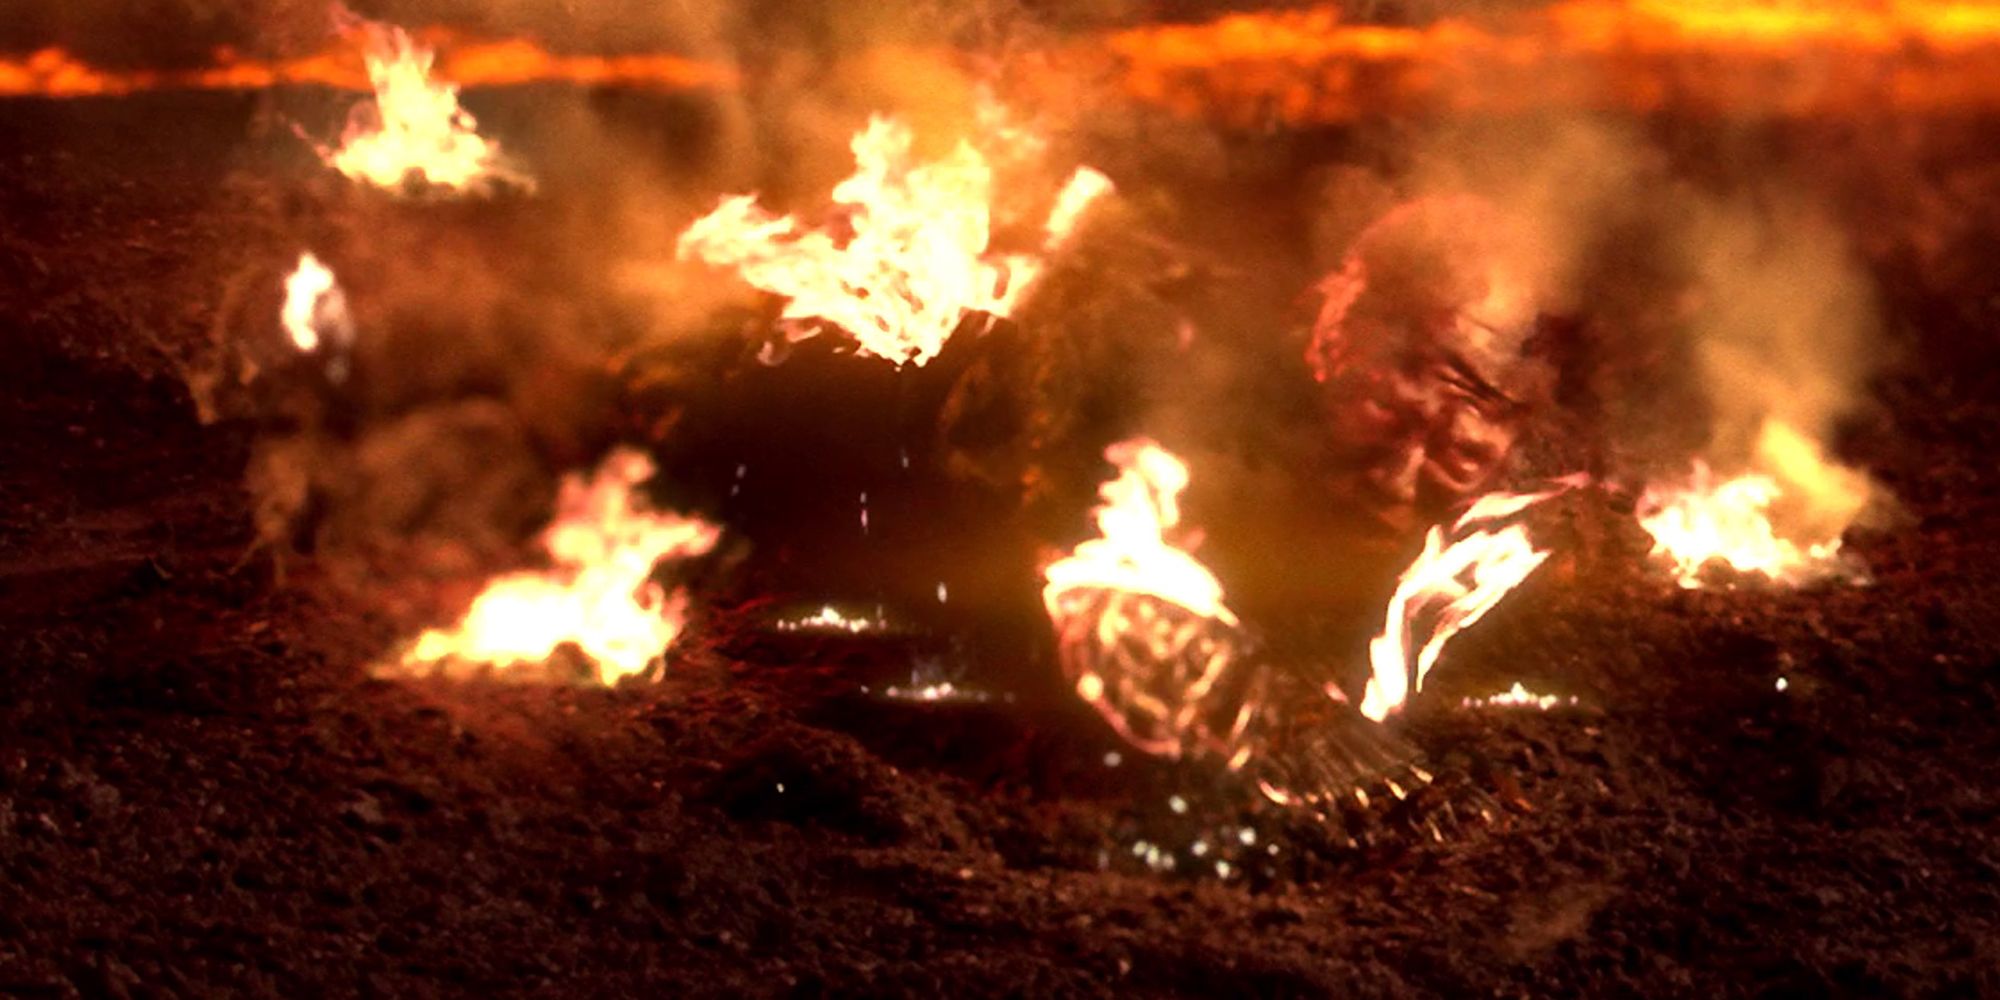 Anakin queimando em Mustafar